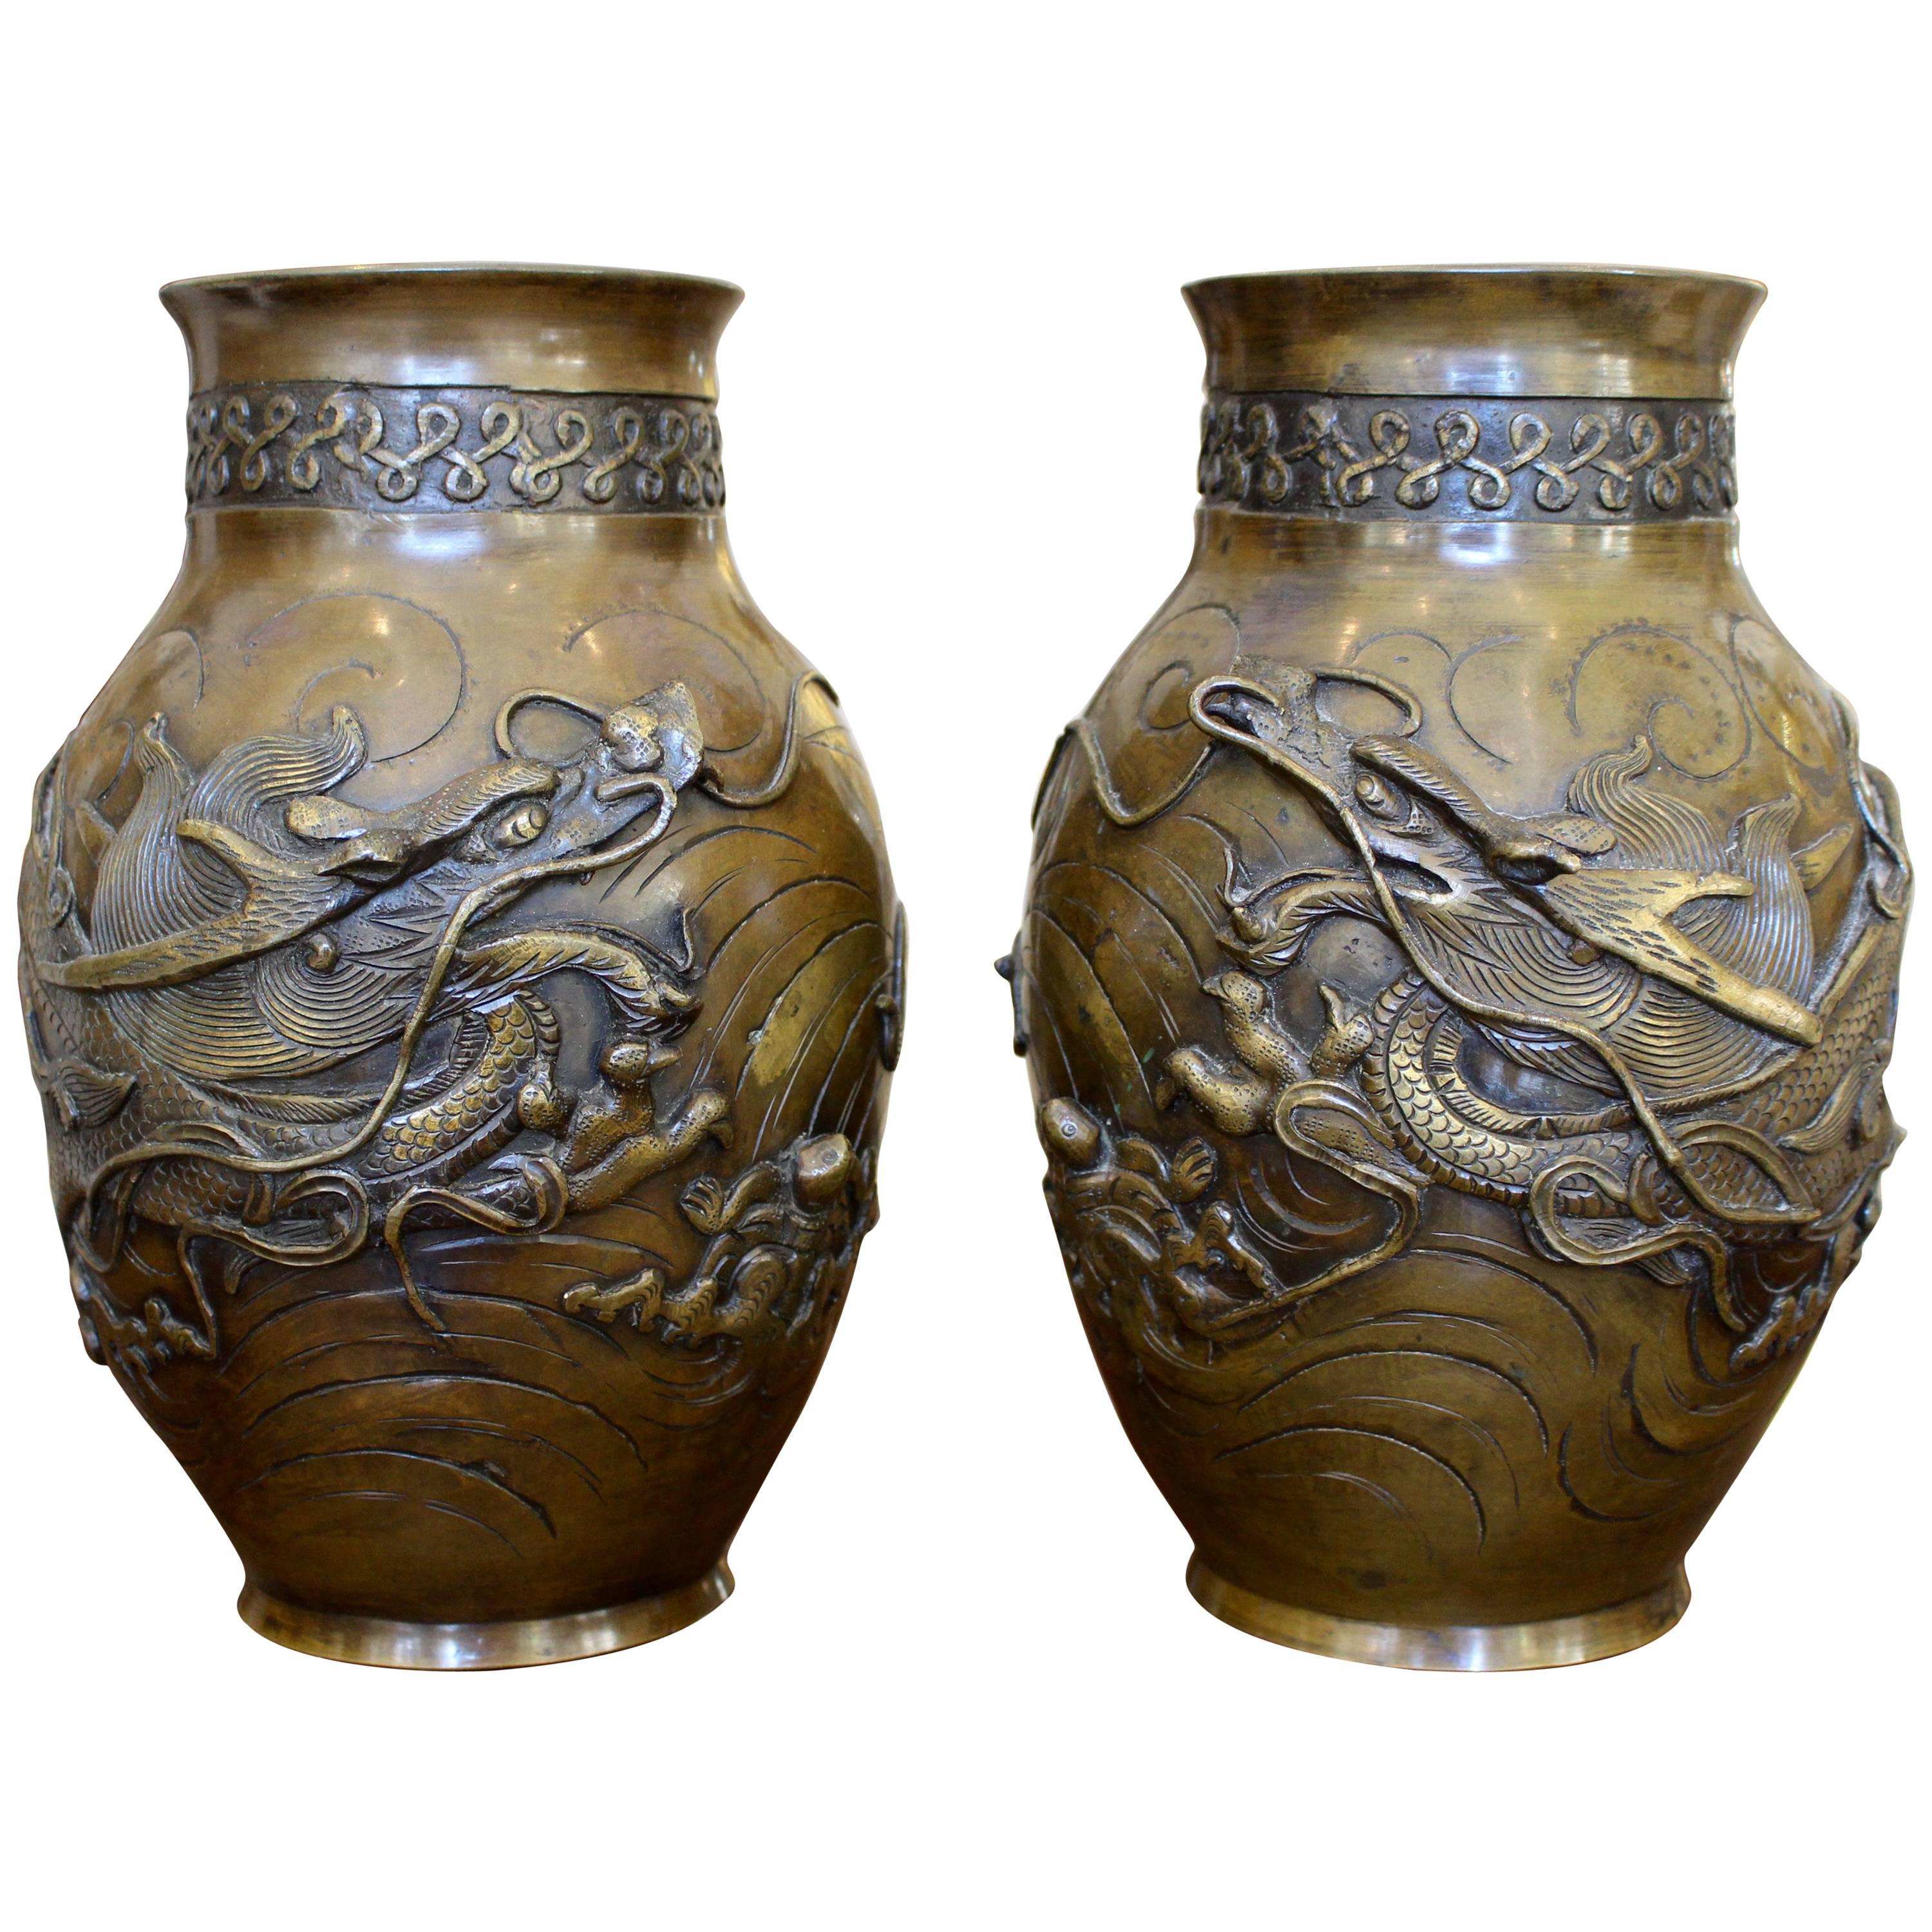 Paar japanische Bronzevasen mit hochreliefierten Drachenfiguren aus fein gegossener Bronze